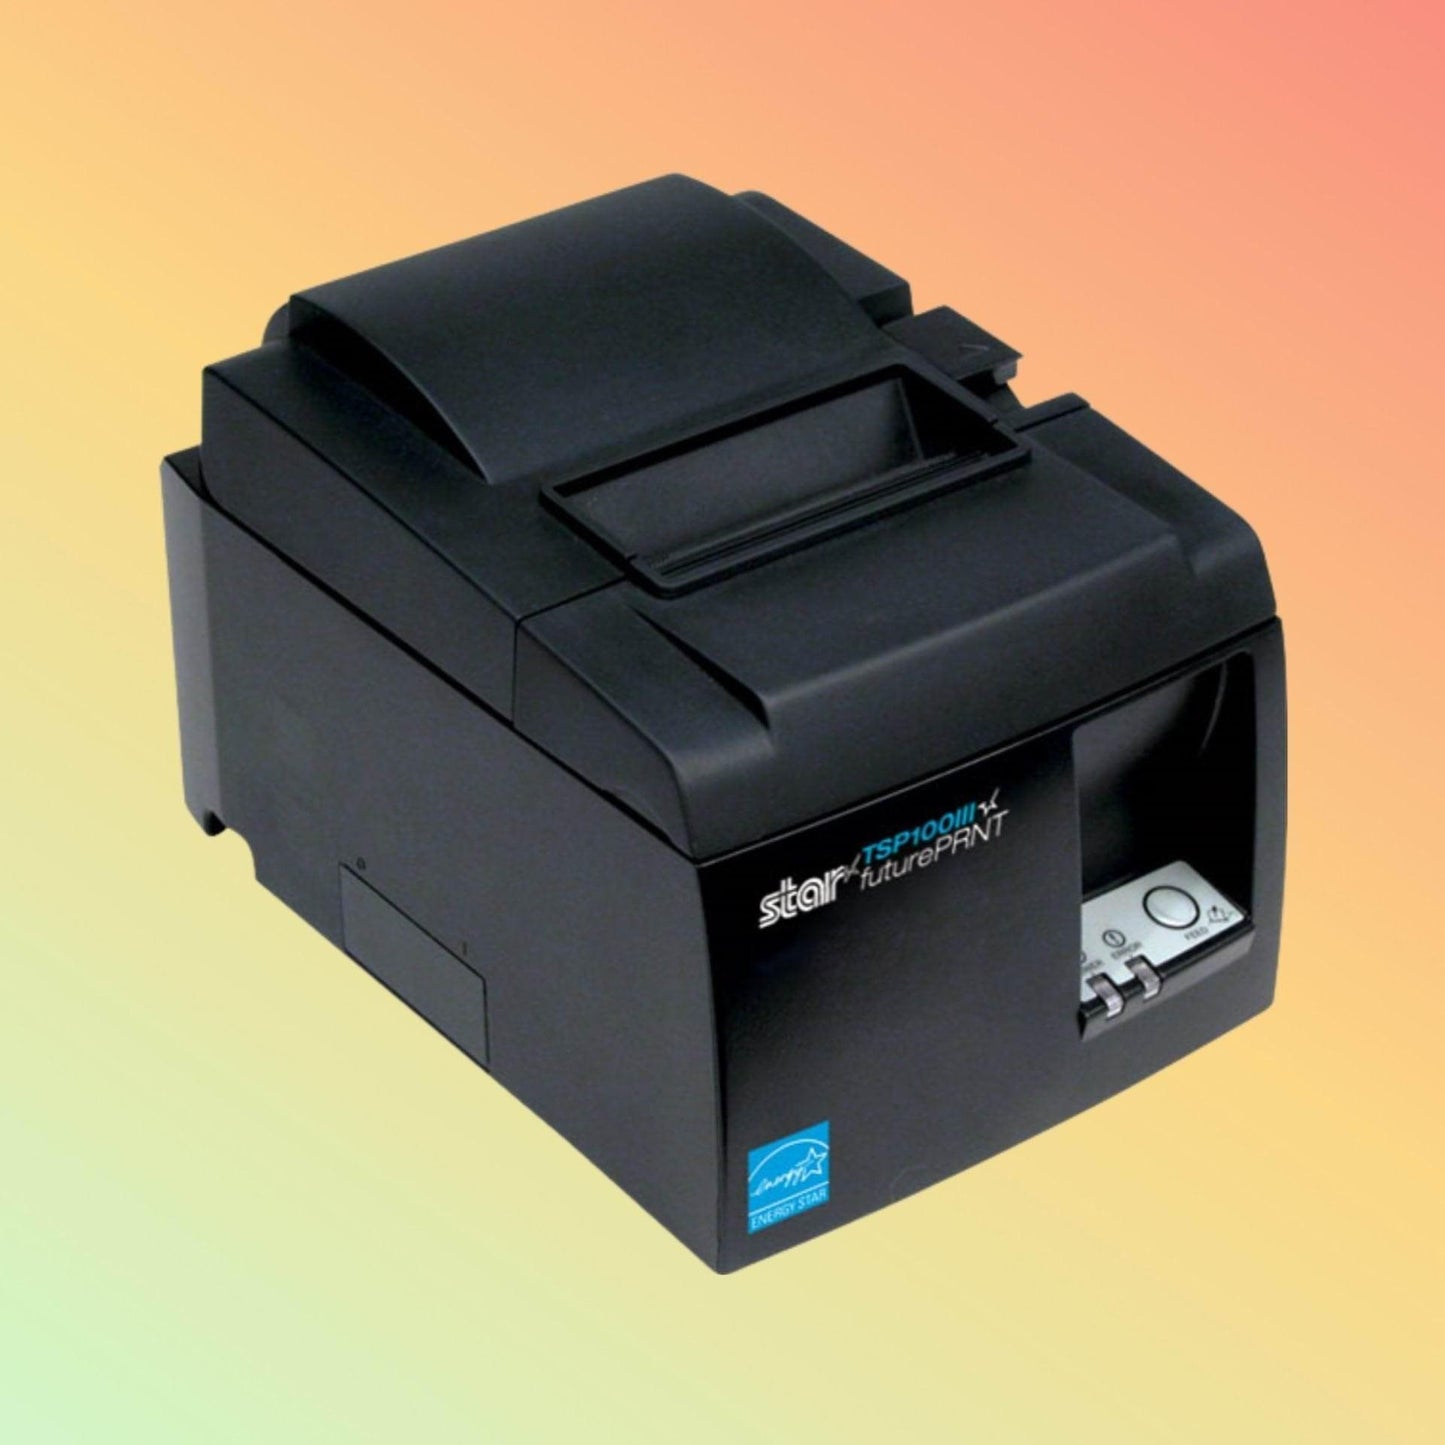 Receipt Printer - Star Micronics BSC10 - Neotech